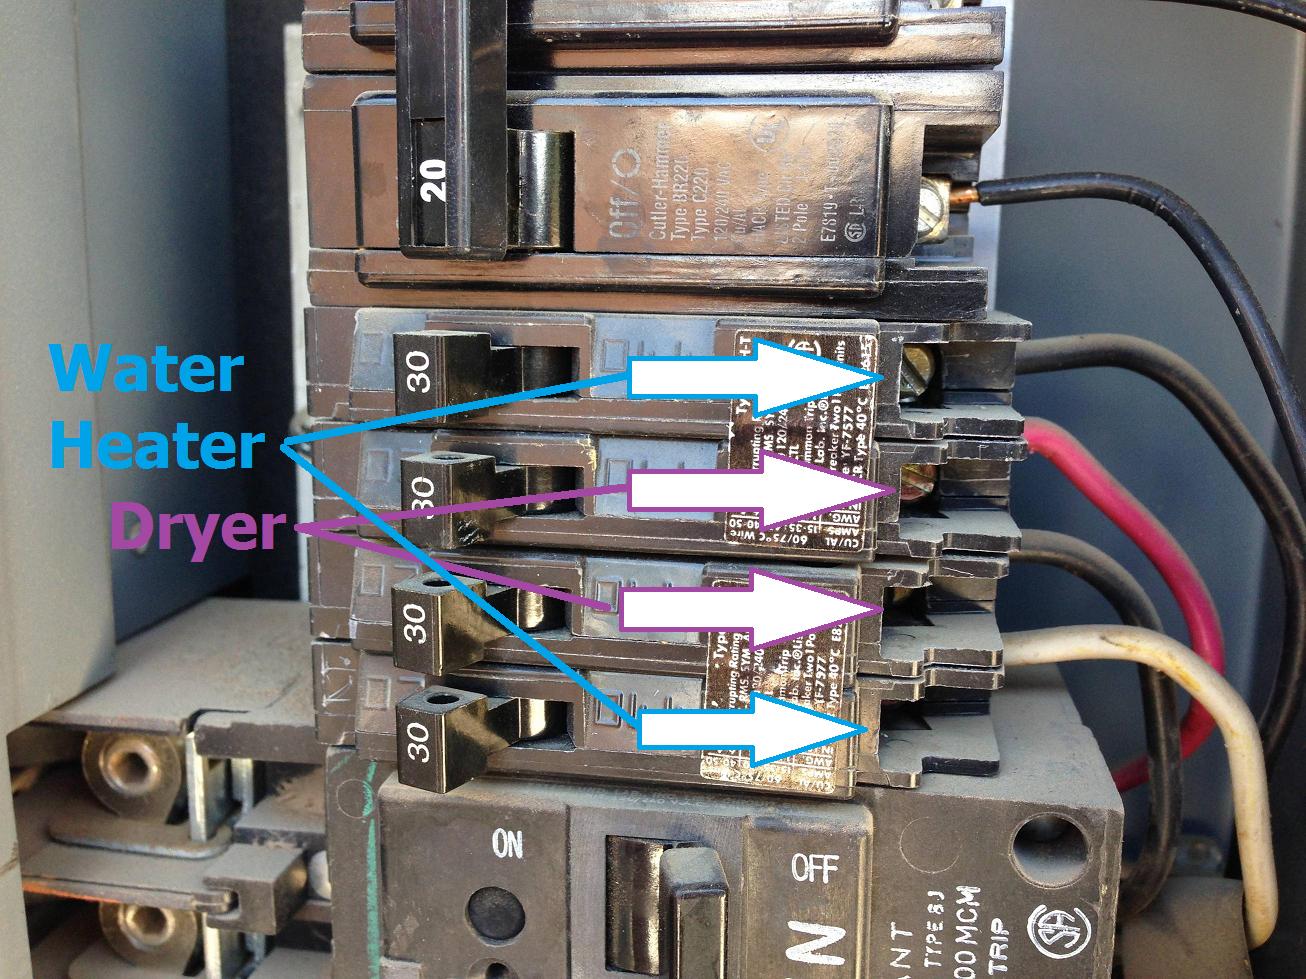 hom120 breaker wiring diagram